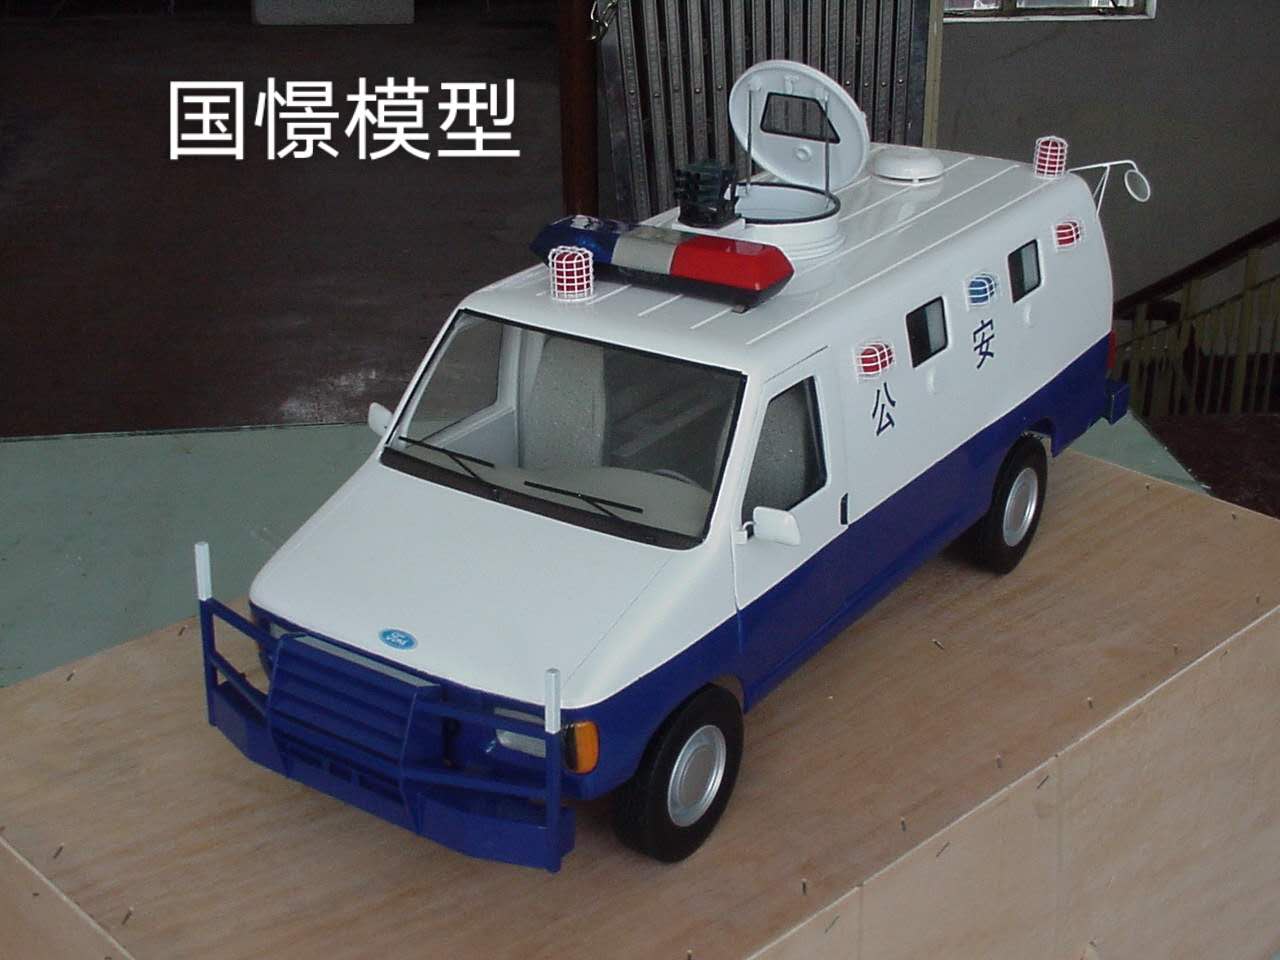 富民县车辆模型